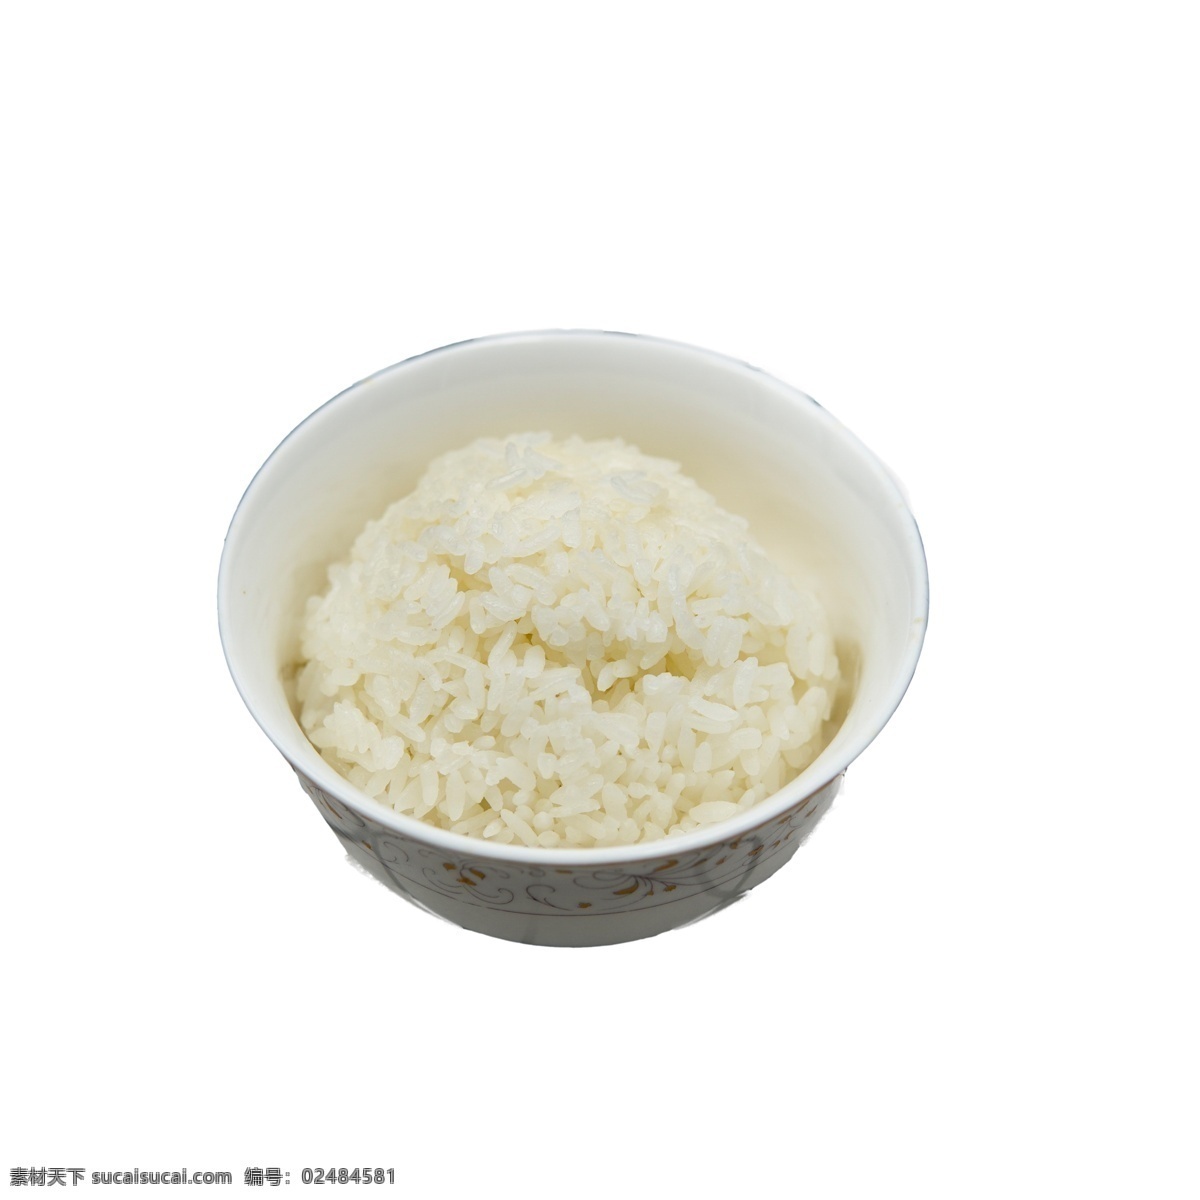 一碗米饭 米饭 白米饭 产品实物 实物产品 实物 免扣实物